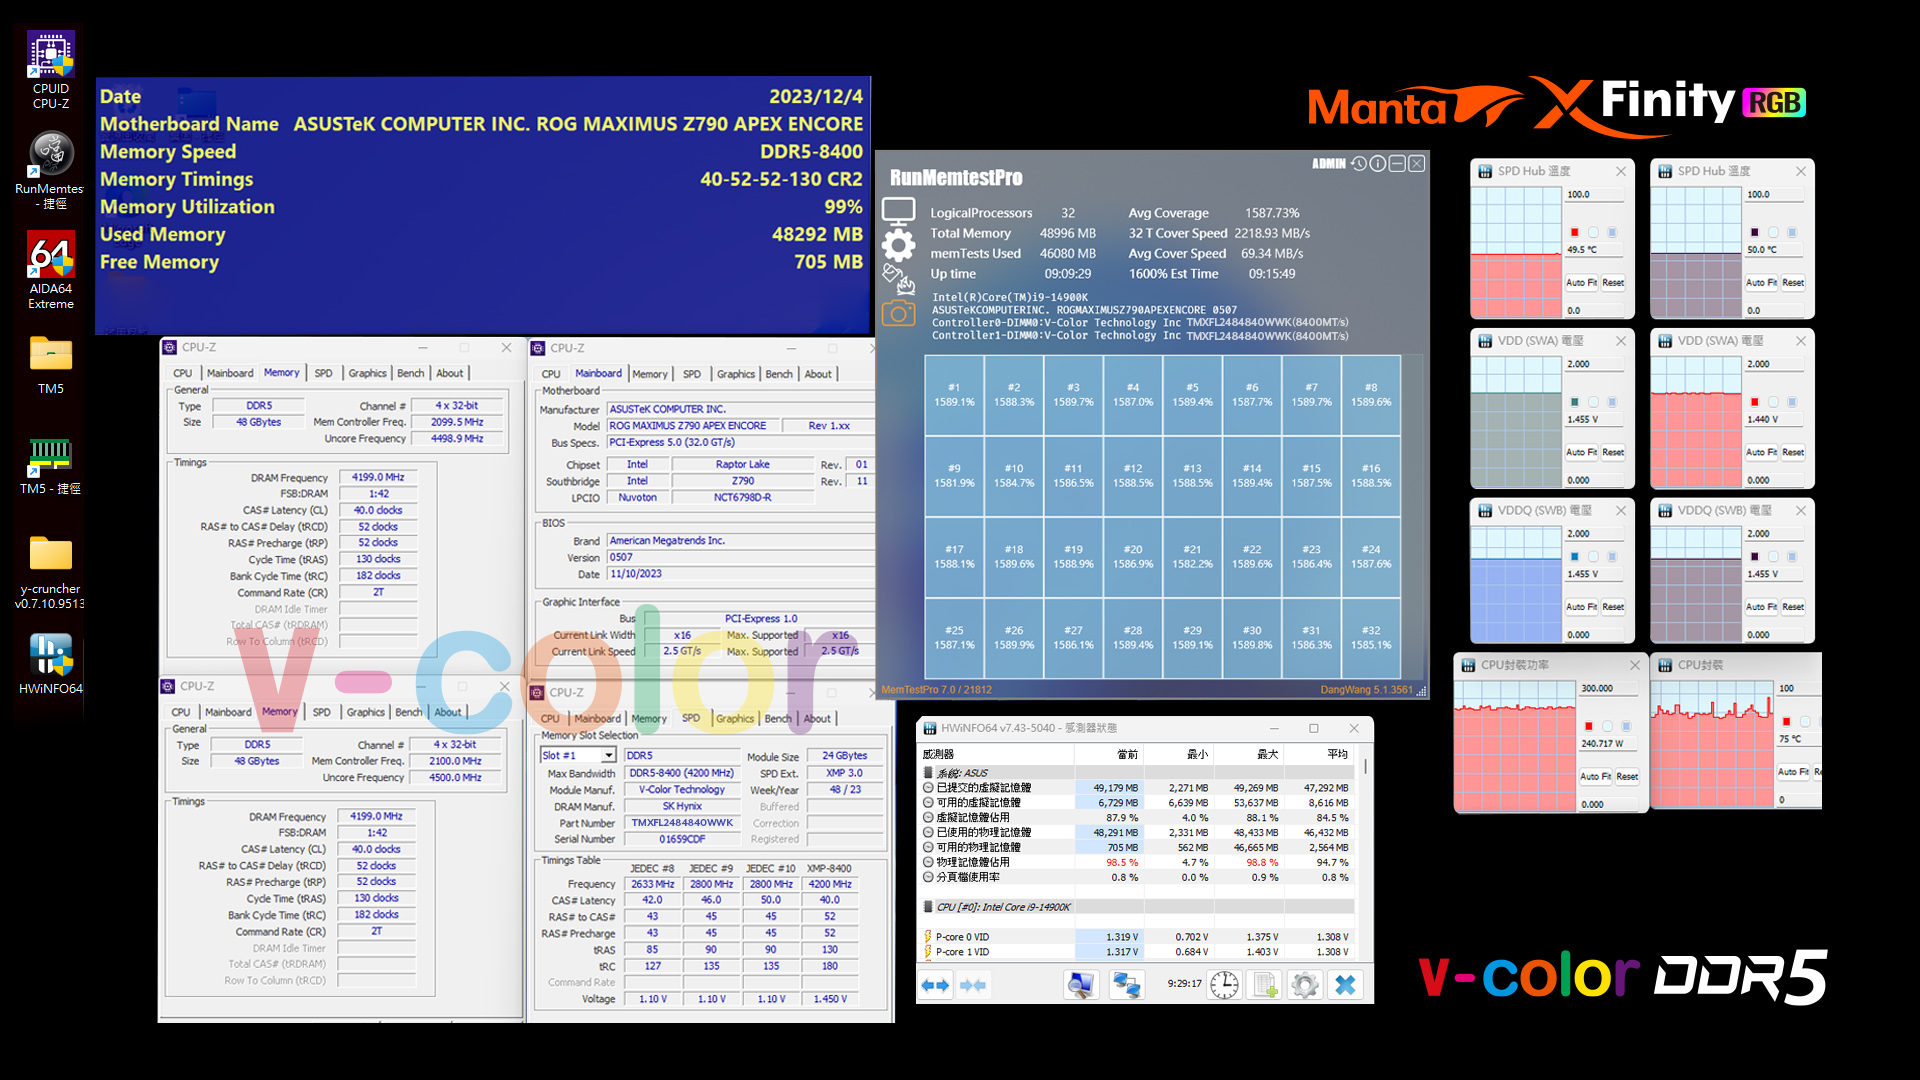 V-Color Mana XFinity DDR5-Speicherkits vorgestellt: Bis zu 8400 MT/s Geschwindigkeiten, 96 GB Kapazitäten, Premium RGB Design 3